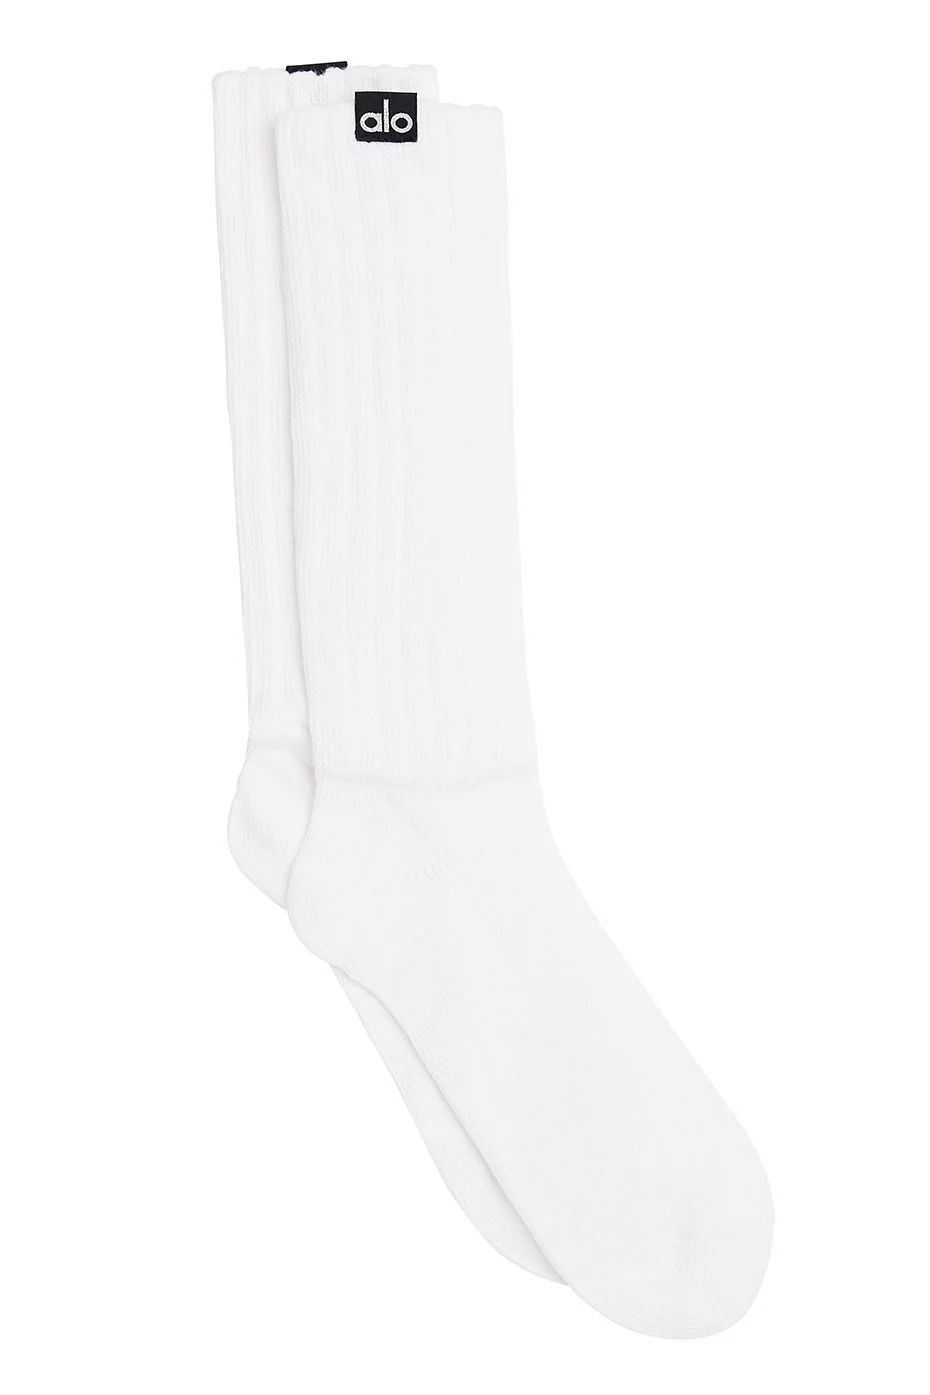 Alo YogaÅ½ | Women's Scrunch Socks in White, Size: S/M (5-7.5) | Alo Yoga